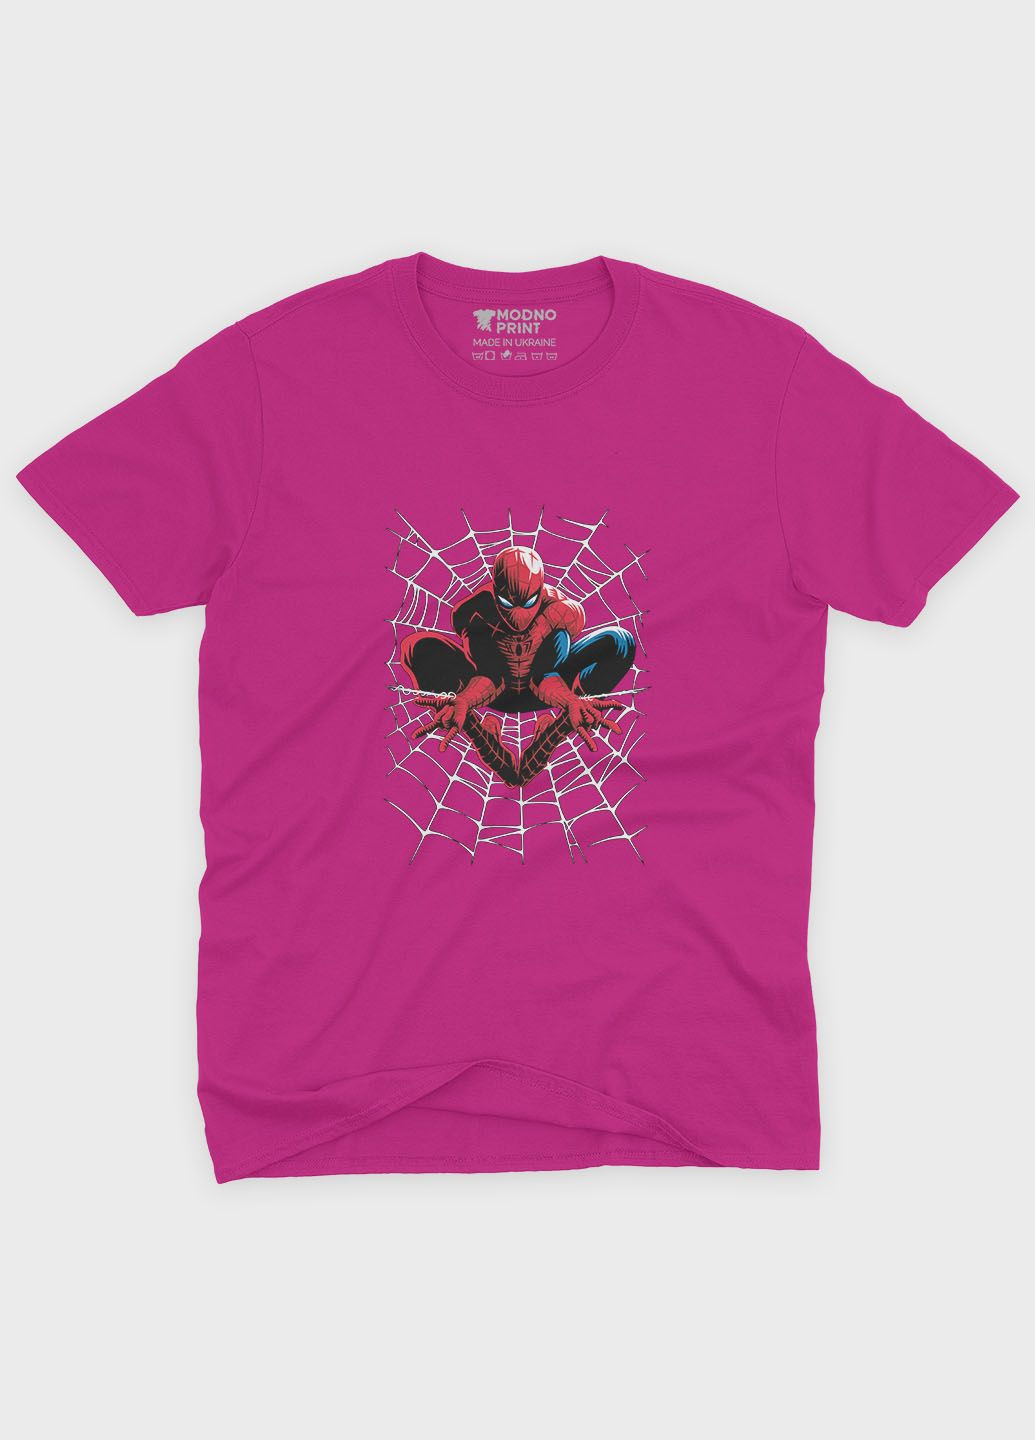 Розовая демисезонная футболка для девочки с принтом супергероя - человек-паук (ts001-1-fuxj-006-014-064-g) Modno